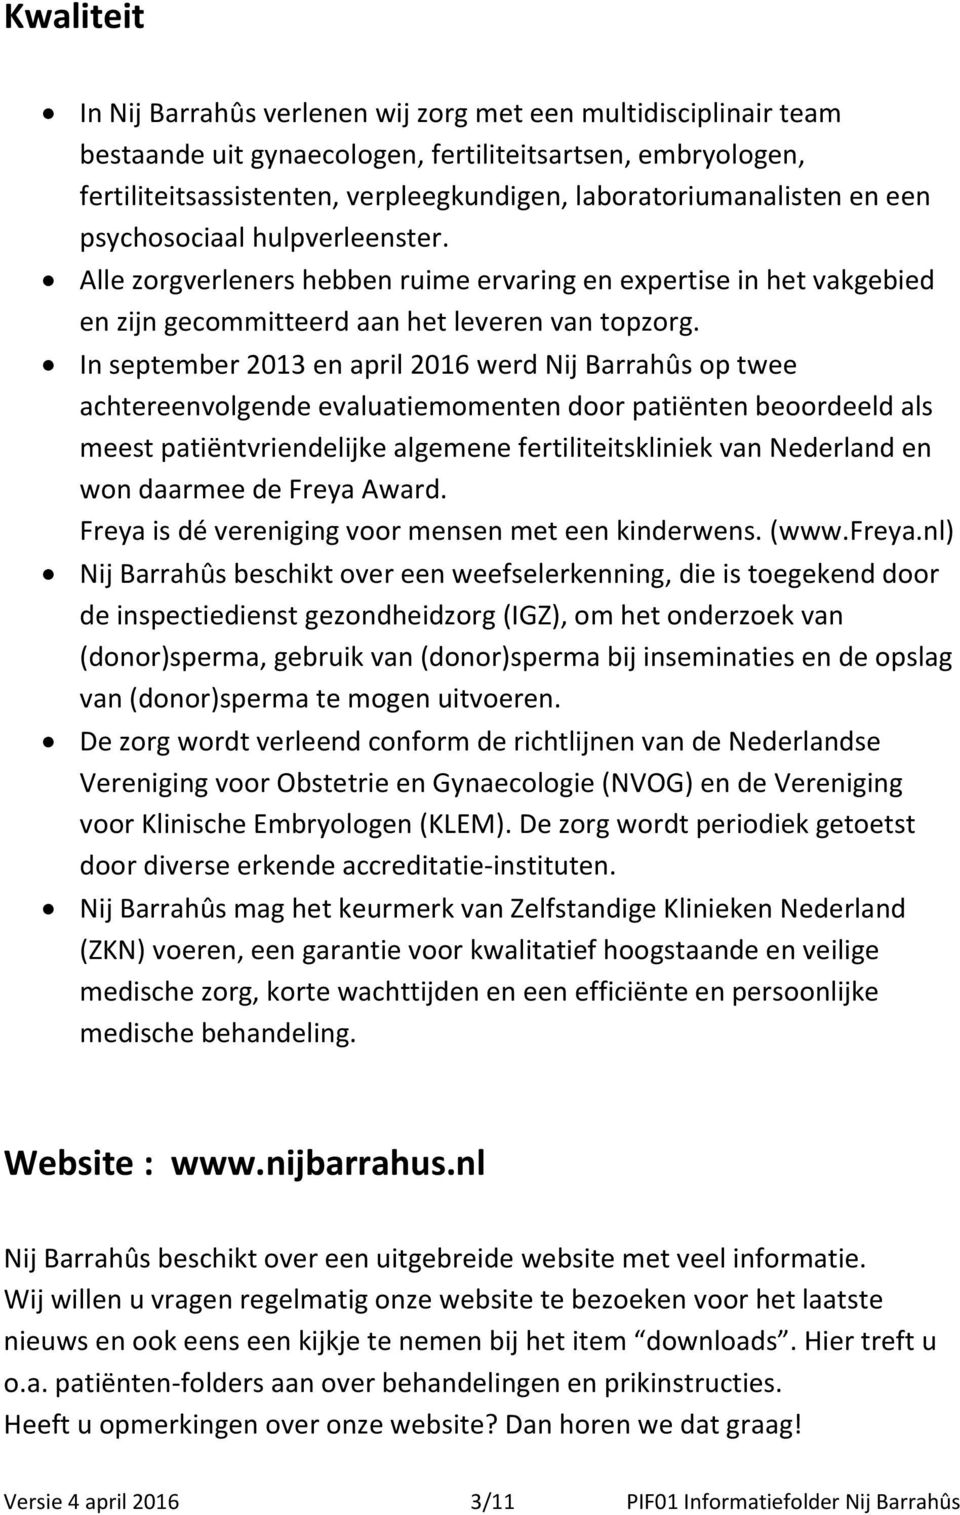 In september 2013 en april 2016 werd Nij Barrahûs op twee achtereenvolgende evaluatiemomenten door patiënten beoordeeld als meest patiëntvriendelijke algemene fertiliteitskliniek van Nederland en won